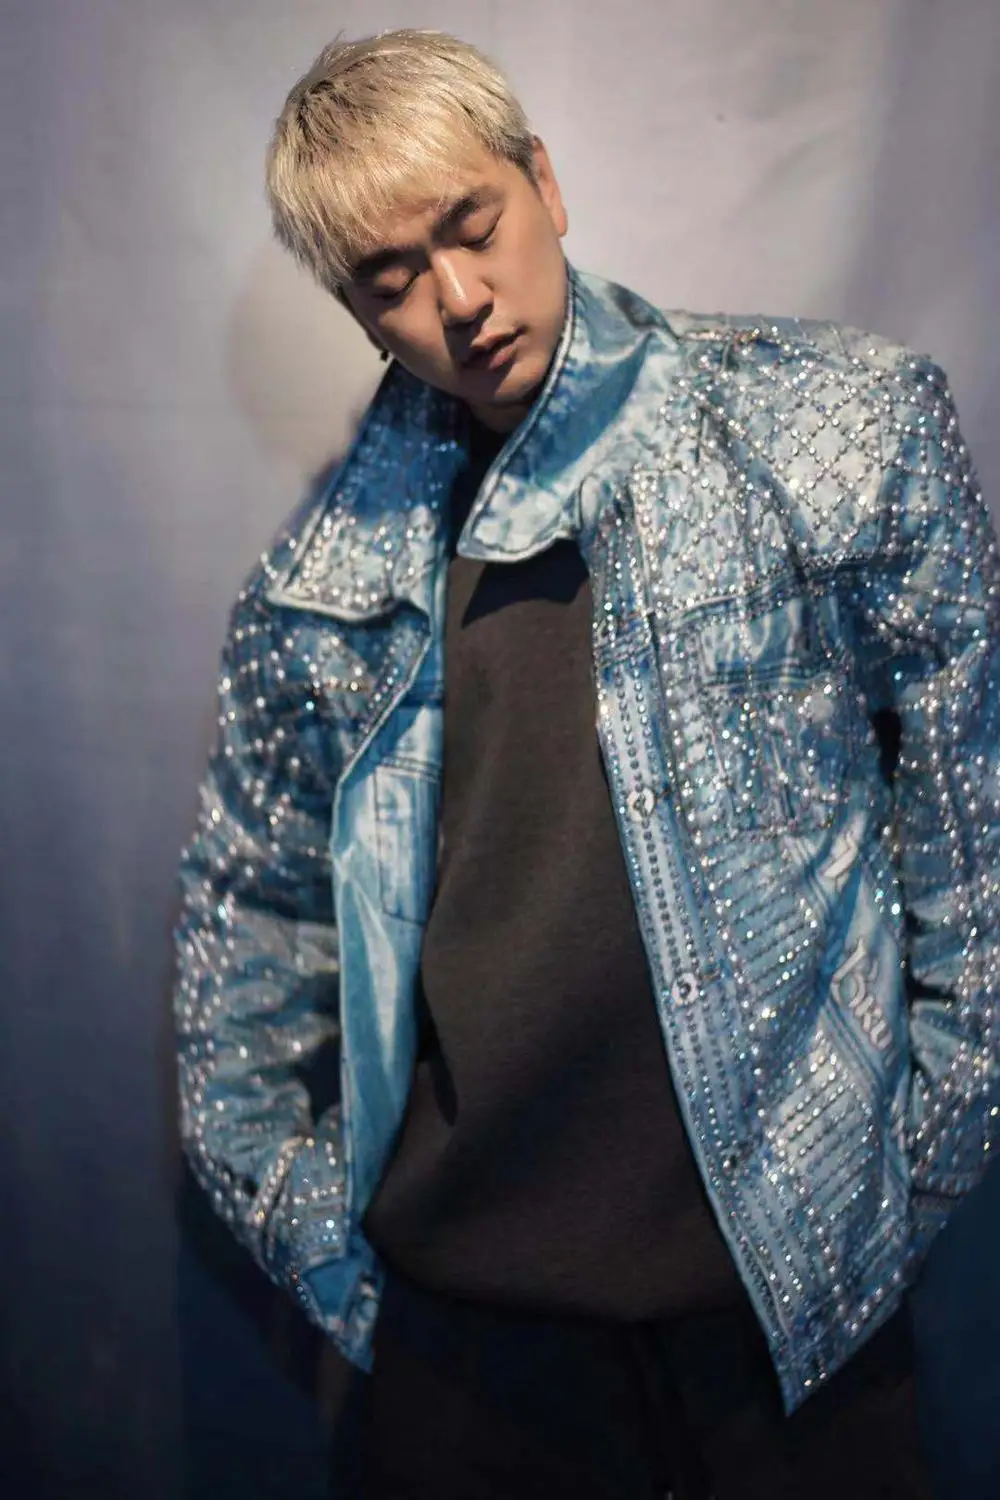 Tide Мужской певец пальто для сцены блестящие стразы жемчуг джинсовая куртка хип хоп DJ танцор синий бисер свободные пальто бар ковбойский костюм